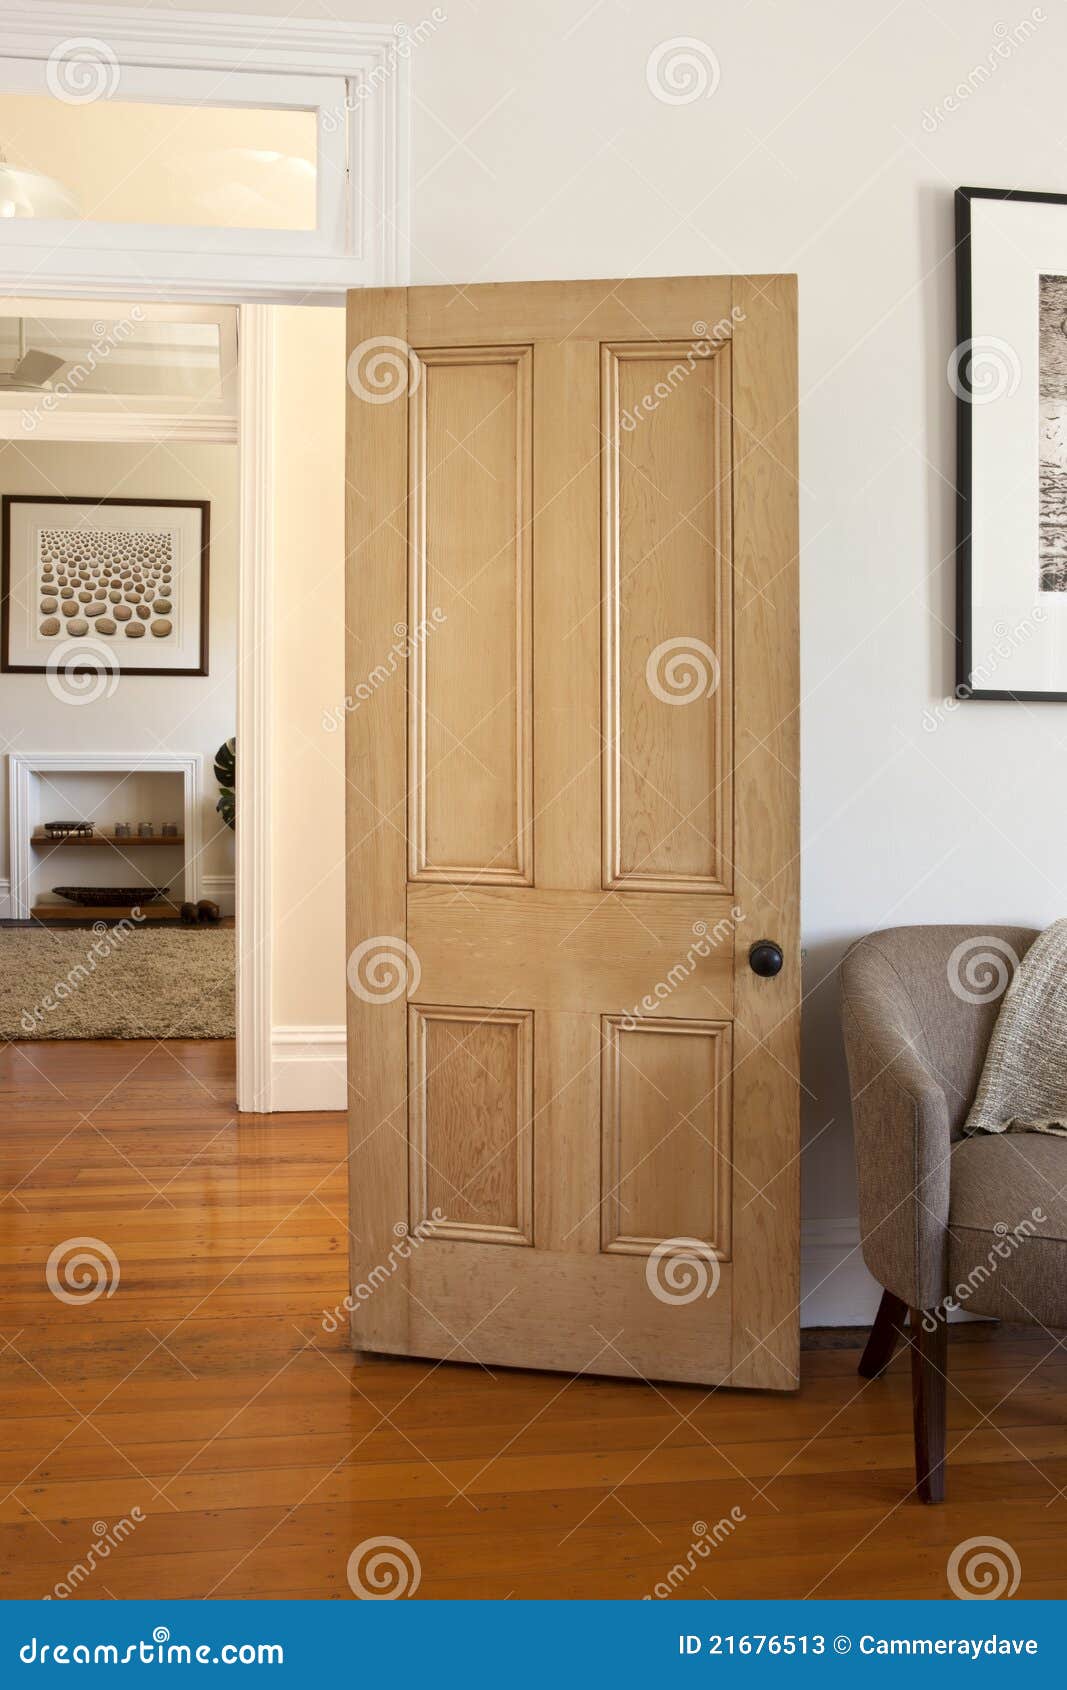 wood door and doorway room